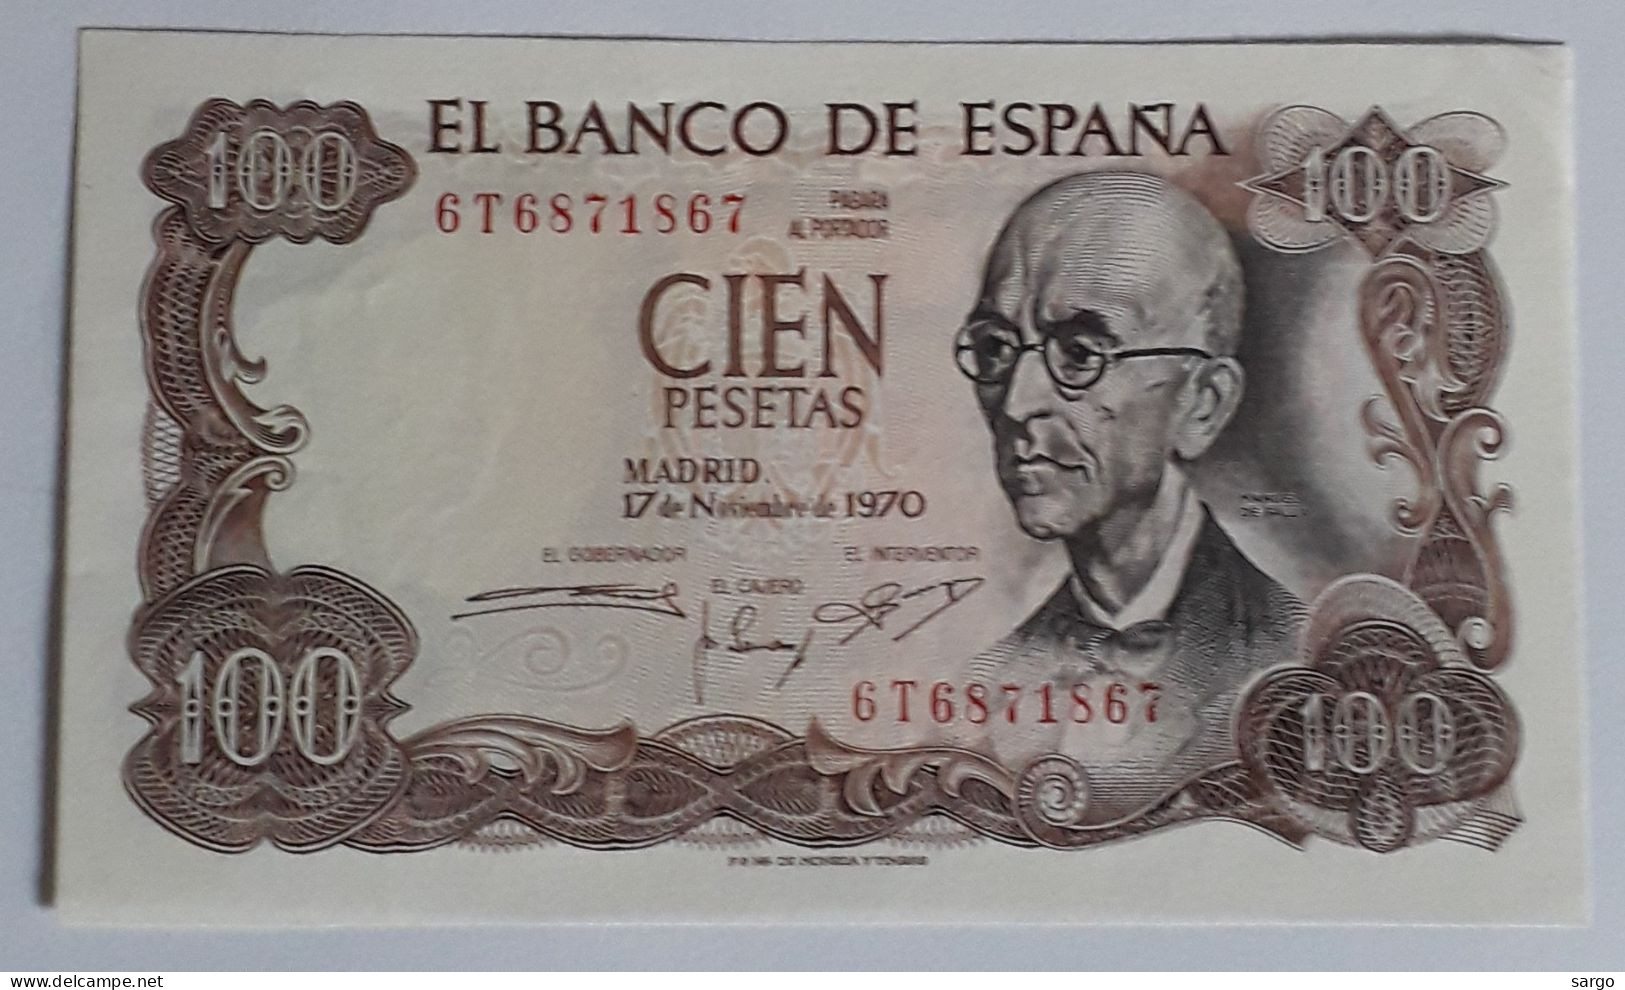 SPAIN  - 100 PESETAS - 1970  - UNC - P 152 - BANKNOTES - PAPER MONEY - CARTAMONETA - - 100 Peseten